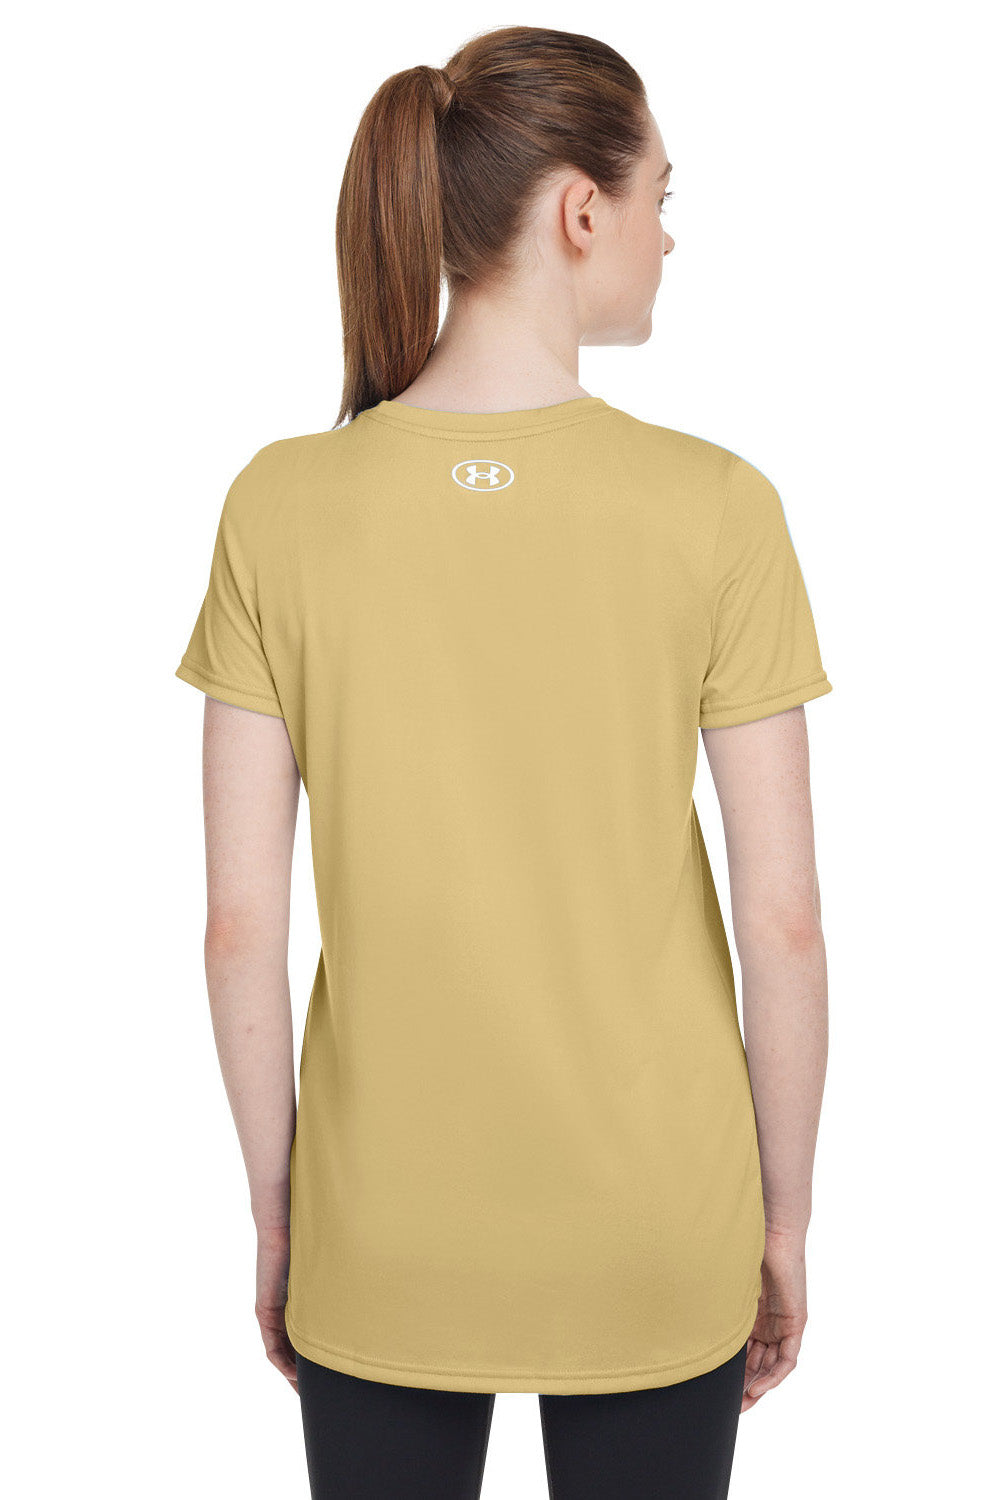 Under Armour 1376847 Womens Team Tech Moisture Wicking Short Sleeve Crewneck T-Shirt Vegas Gold Model Back